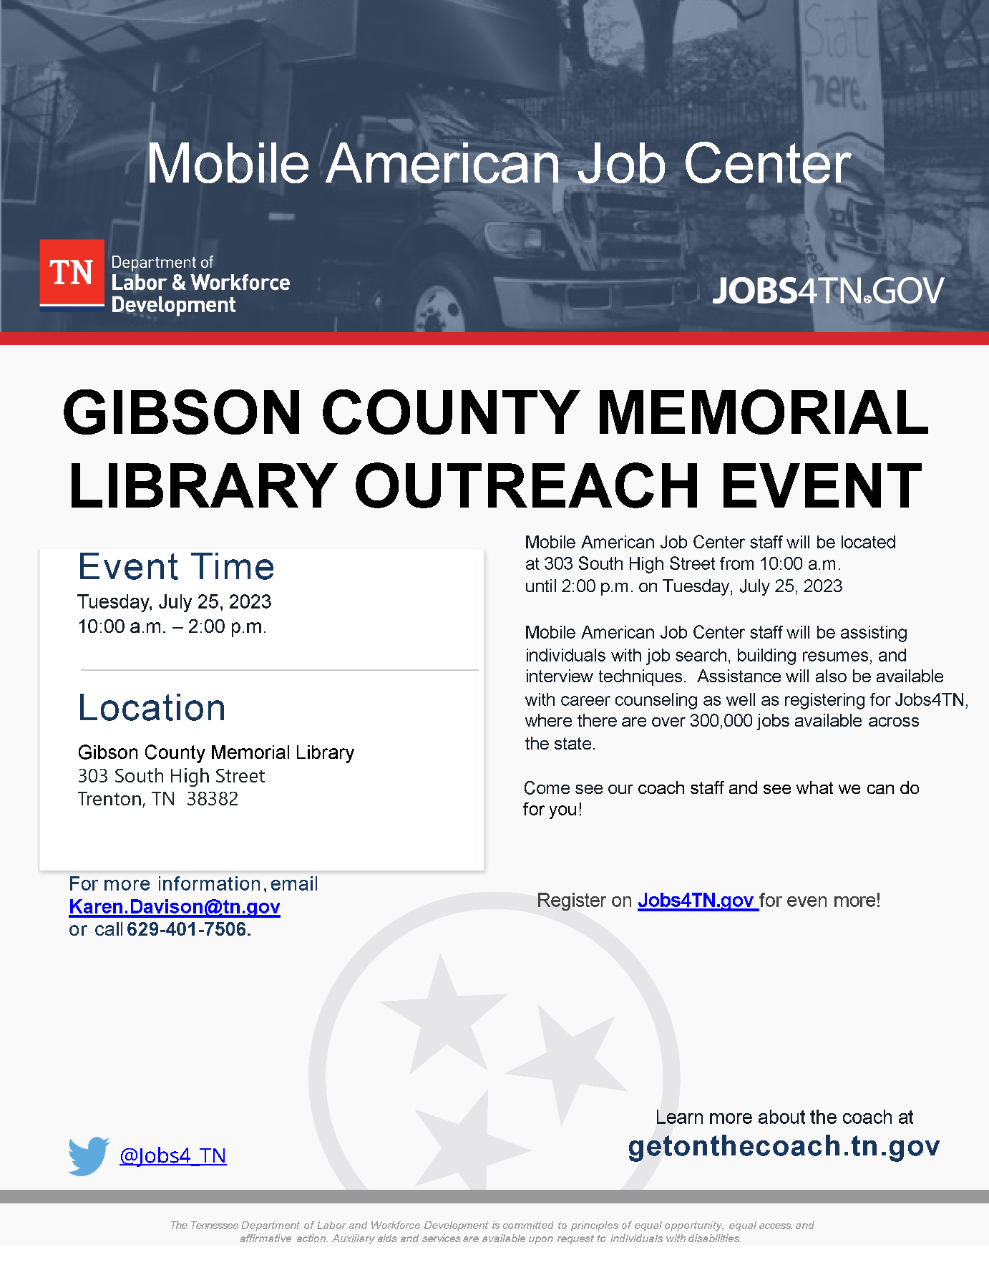 Gibson County Memorial Library Outreach Event, Trenton, TN (7/25/2023)